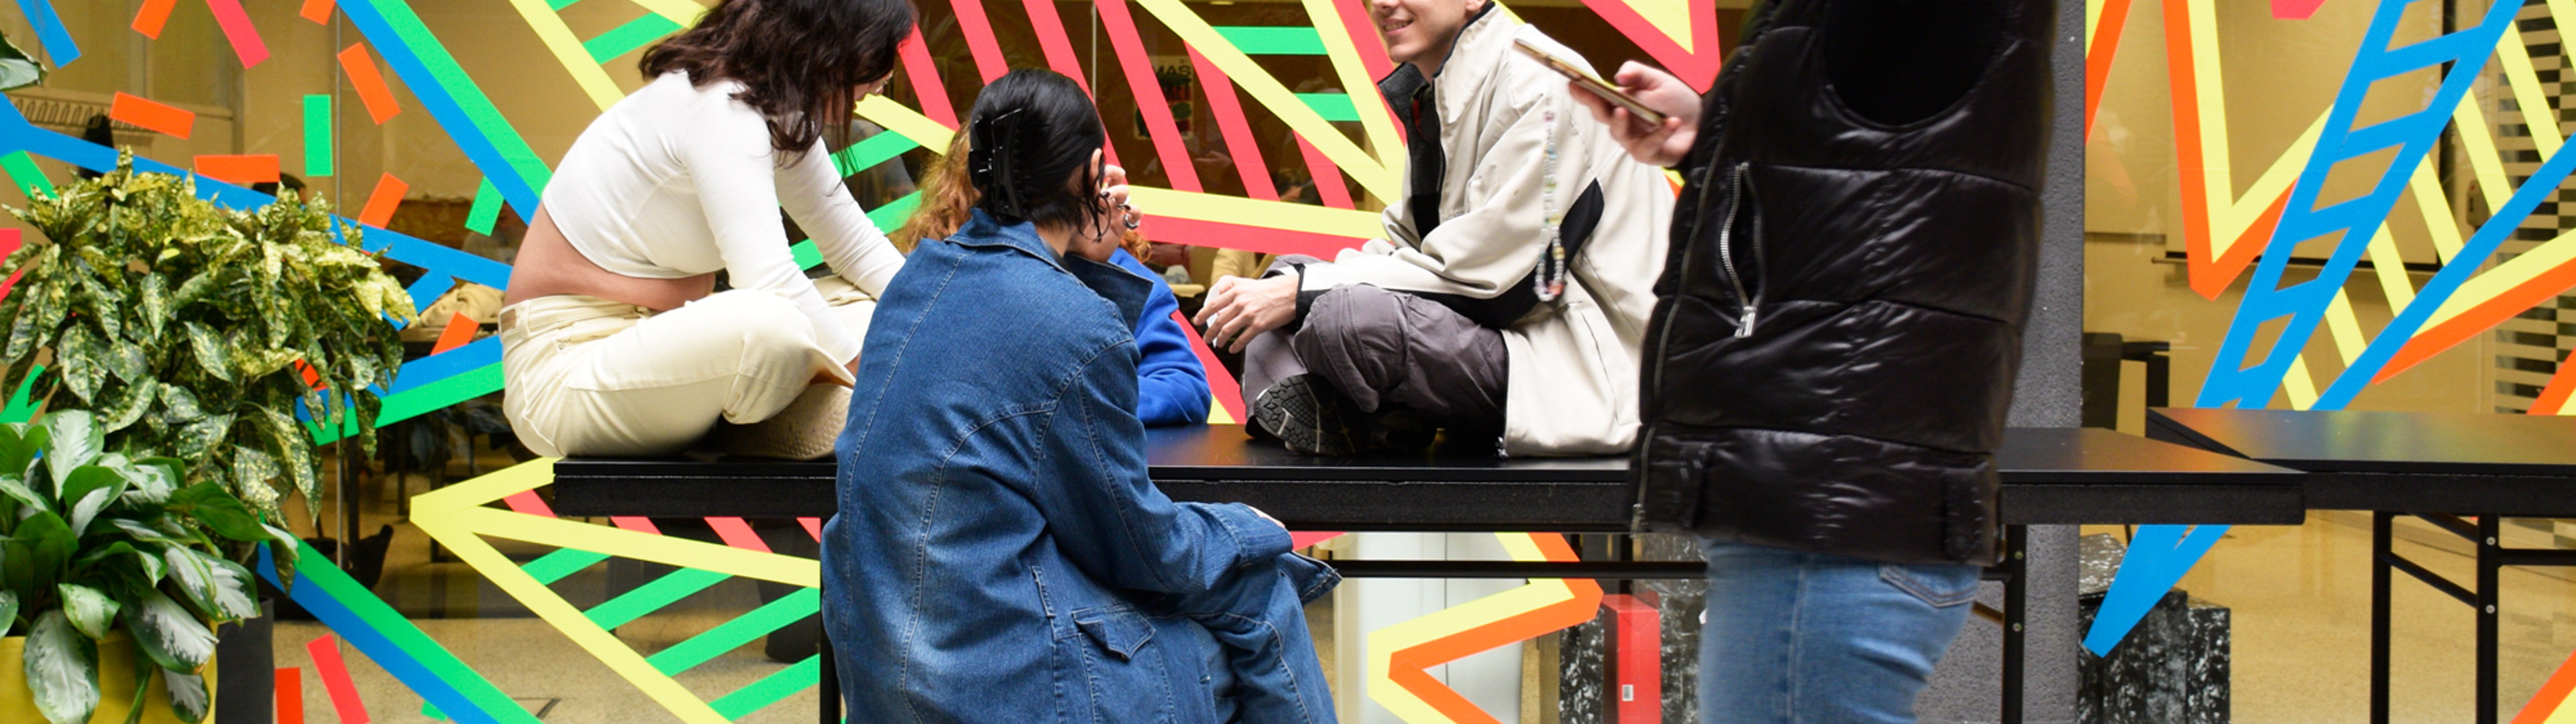 Individuos jóvenes conversando en una zona comunal vibrante y artística con diseños geométricos en la pared.